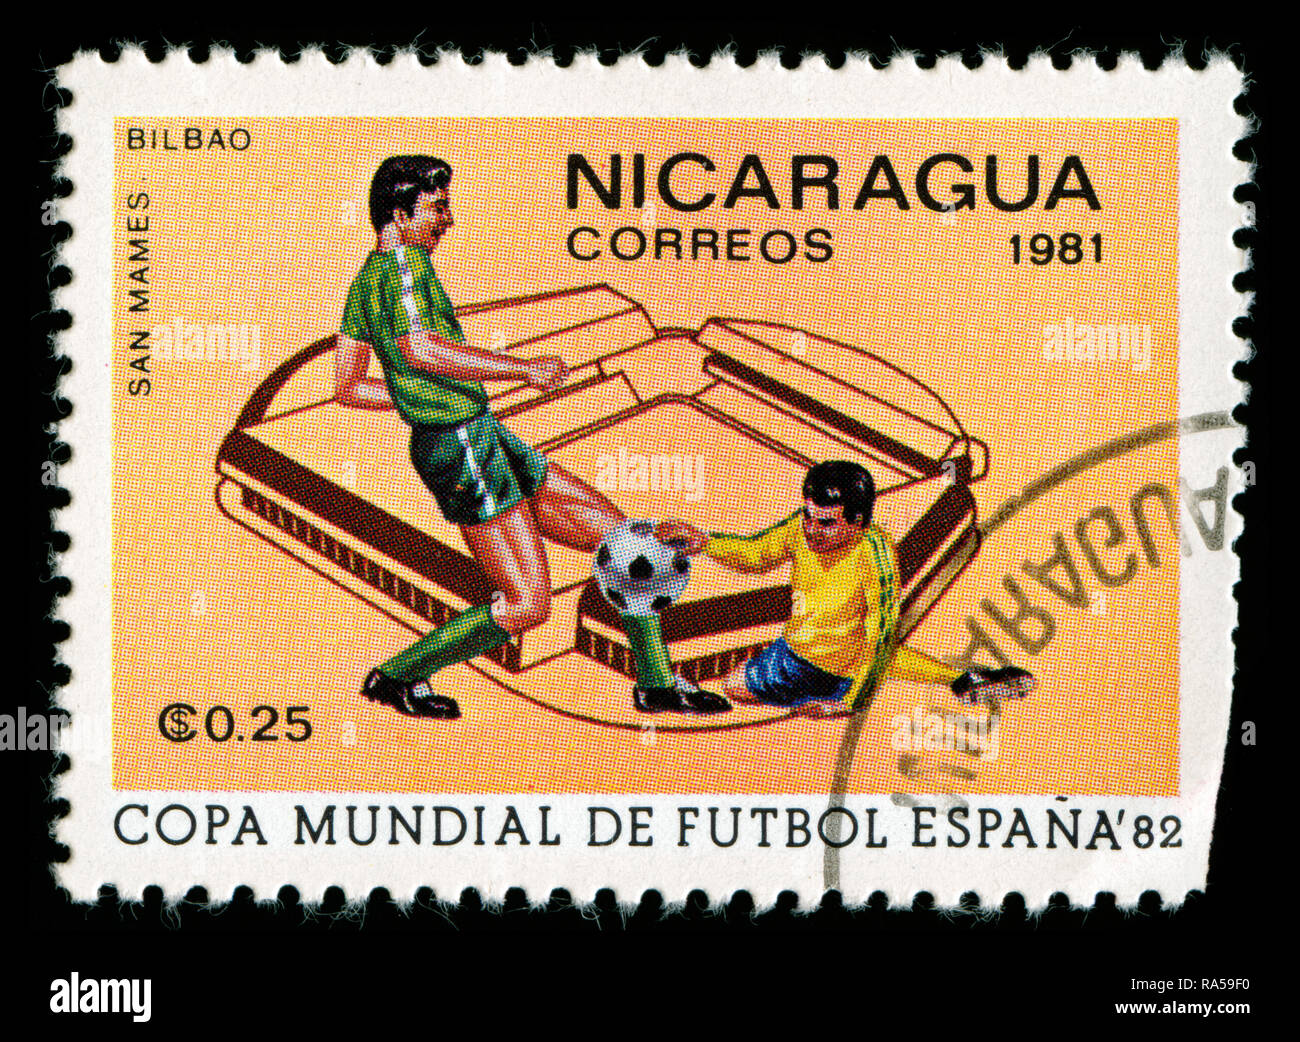 Briefmarke aus Nicaragua in der FIFA-WM 1982 - Spanien Serie in 1981 Stockfoto